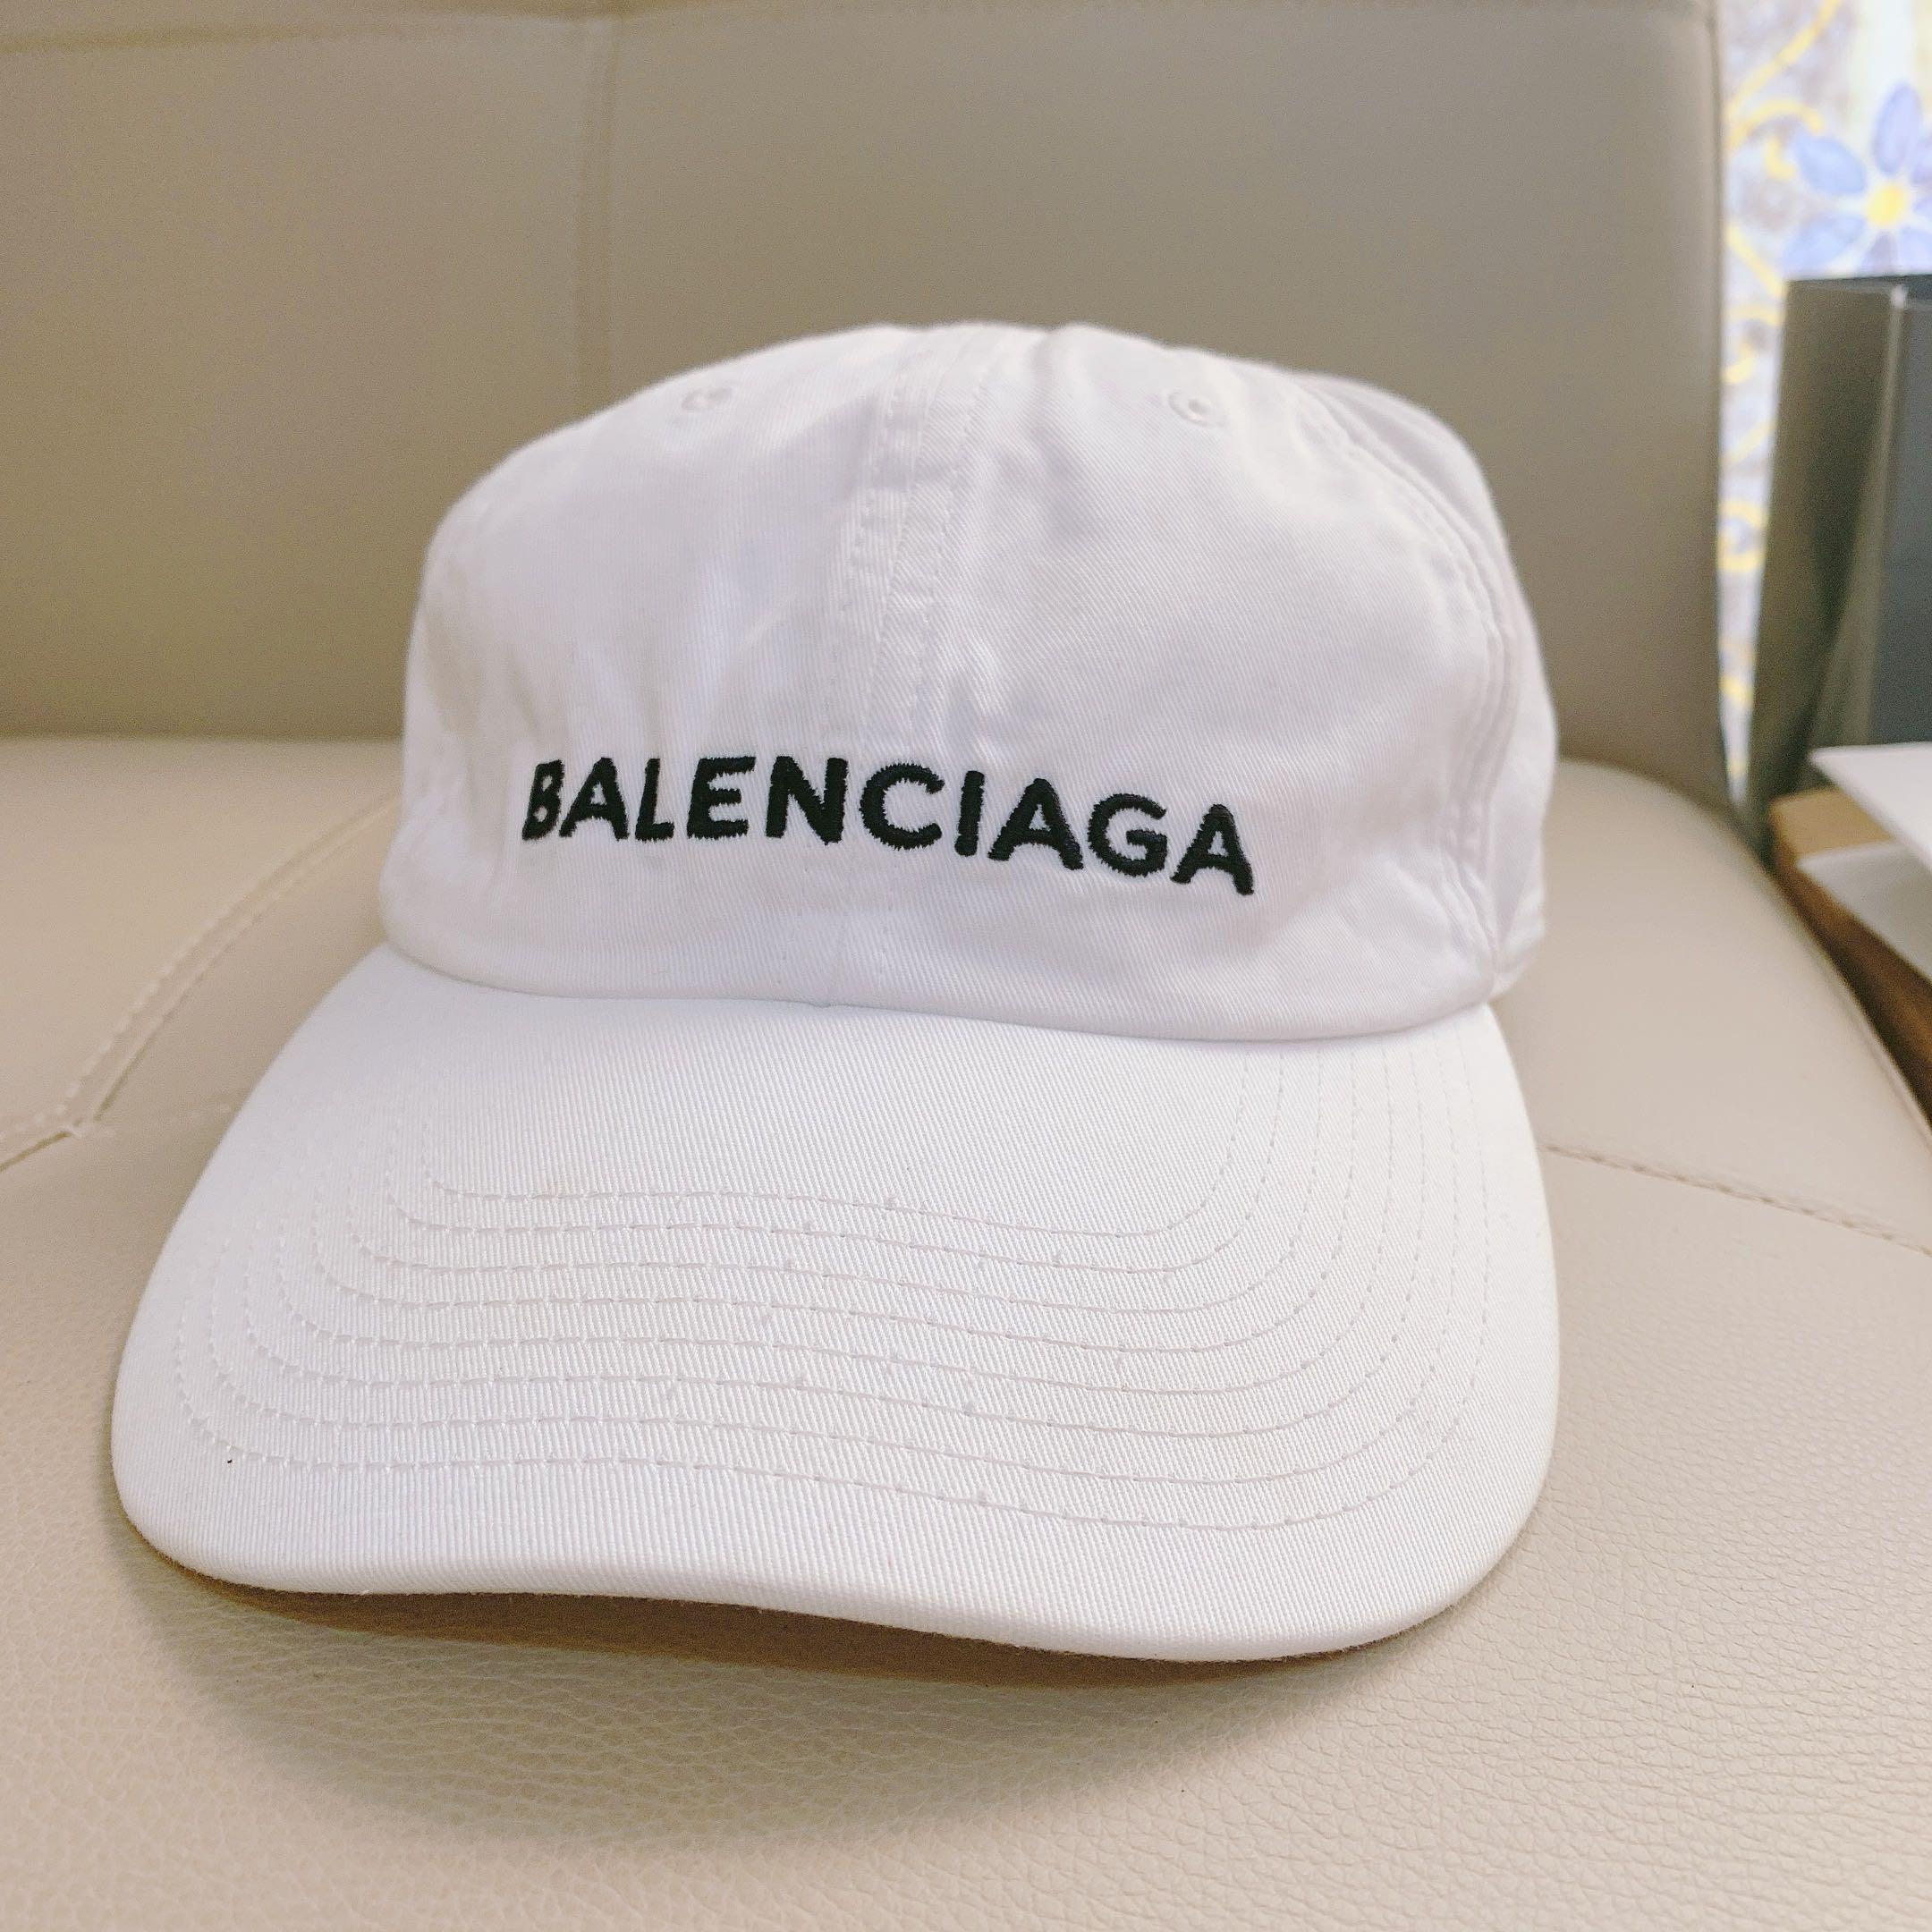 巴黎世家 帽子 balenciaga棒球帽 老帽, 名牌精品, 精品配件在旋轉拍賣